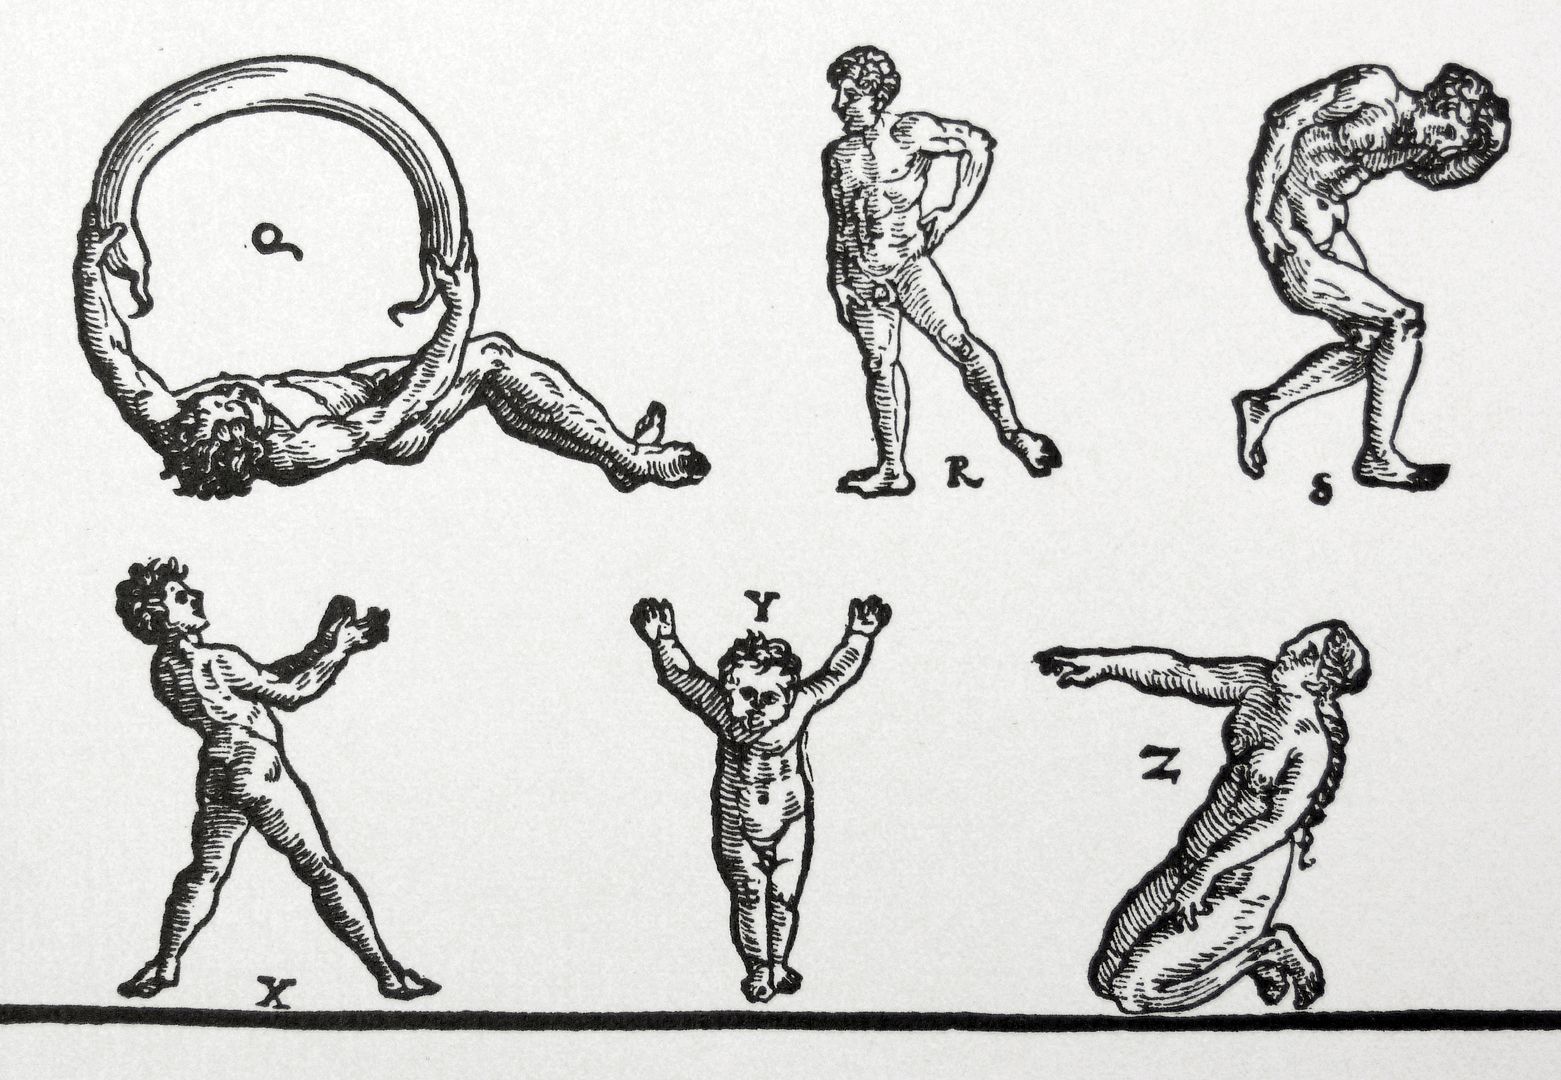 Das Menschenalphabet Detailansicht, siehe oben links Q: ein liegender Mensch hält in beiden Händen eine zum Halbkreis gebogene Wurst. (siehe Künstlersignatur)